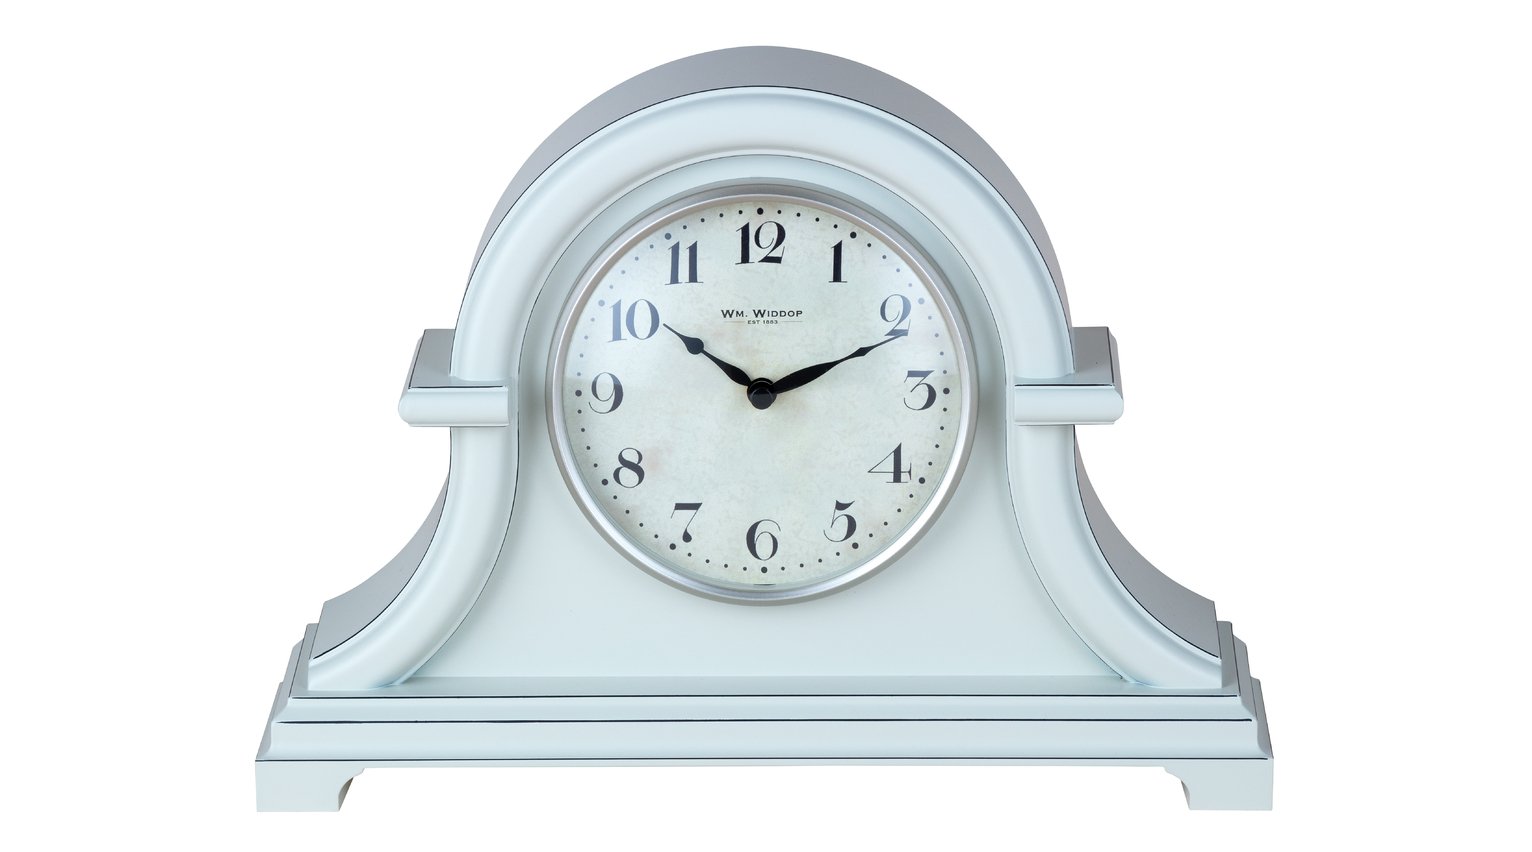 Wm. Widdop Mantel Clock - Grey